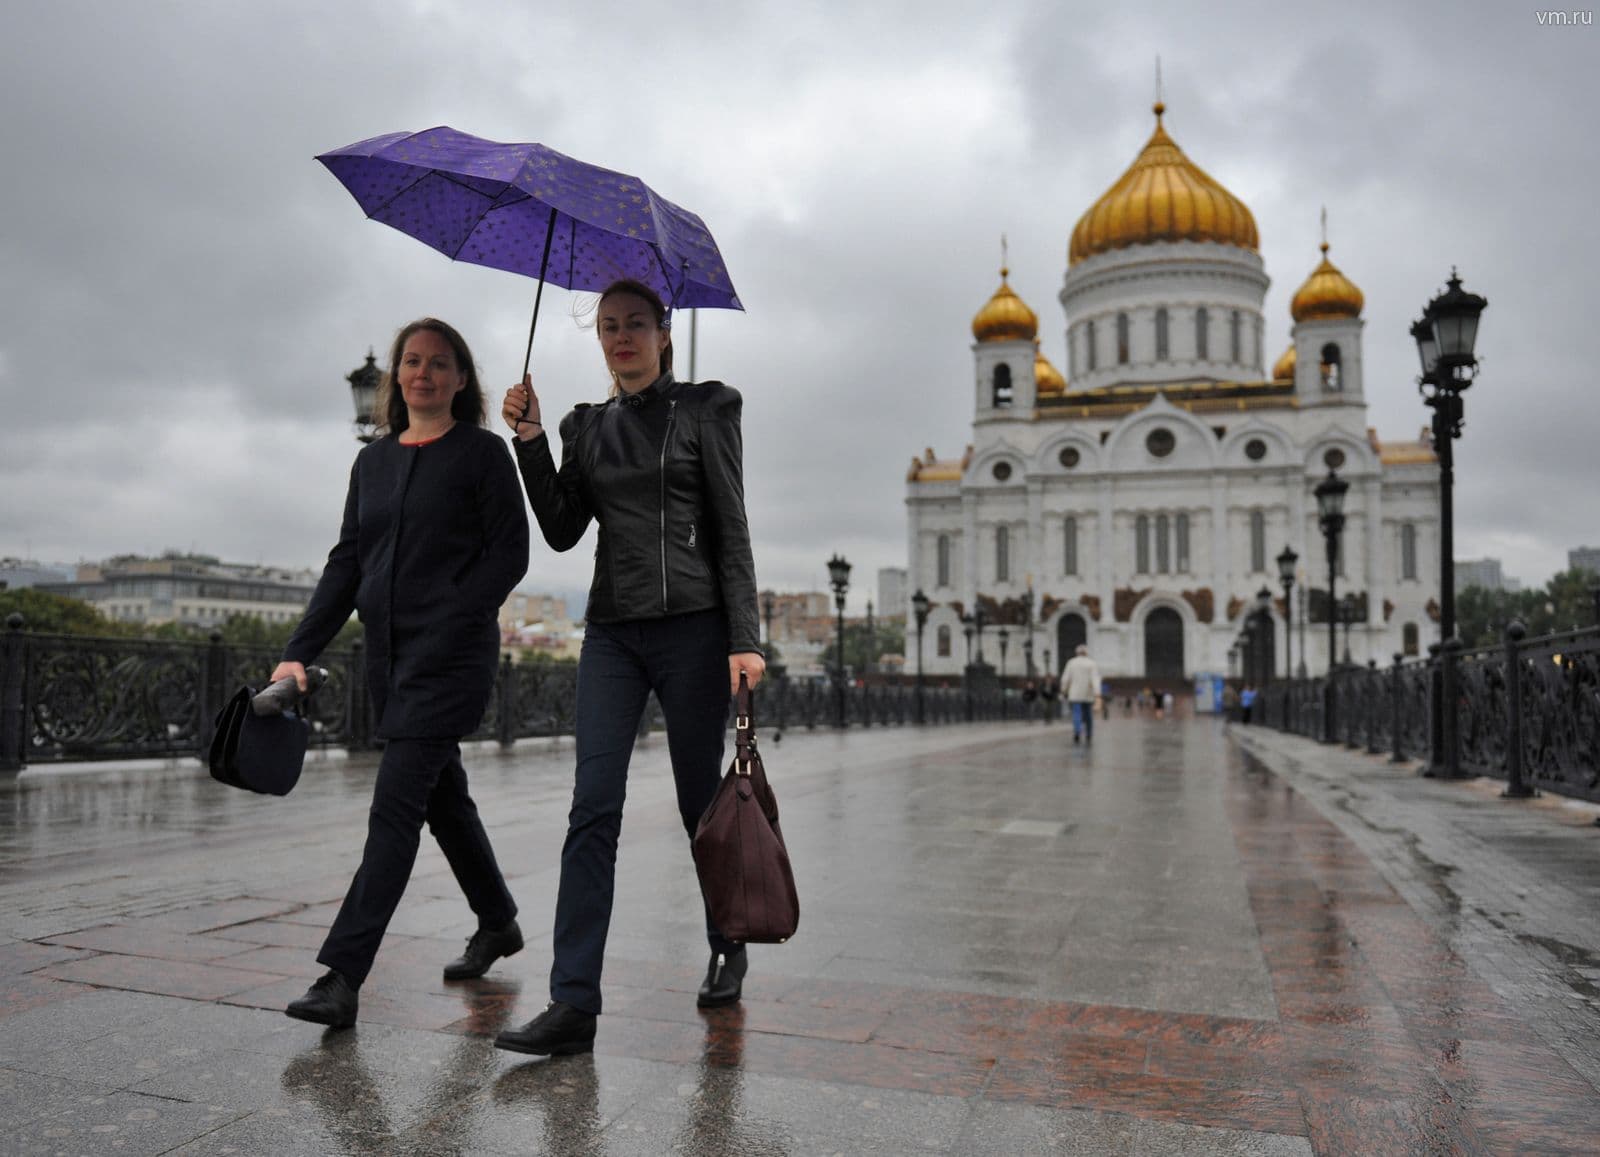 Москва был ли дождь. Москва под дождем. Дождь в Москве. Москва ноябрь дождь. Дождливый день в Москве.